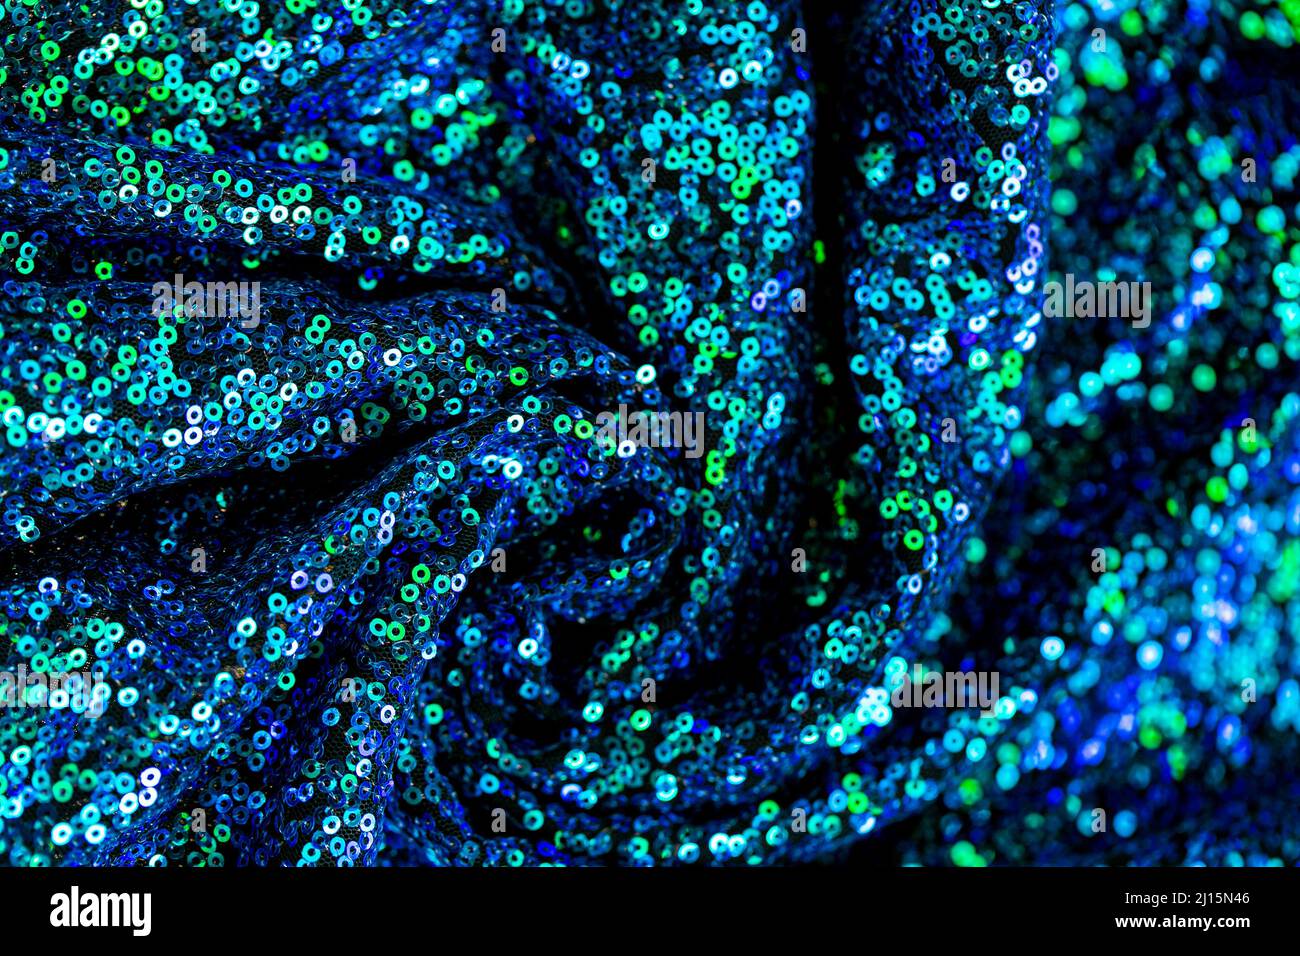 Lentejuelas texture.Green azul lentejuelas background.Shiny azul y verde tela.Artesanía y hobby. Foto de stock